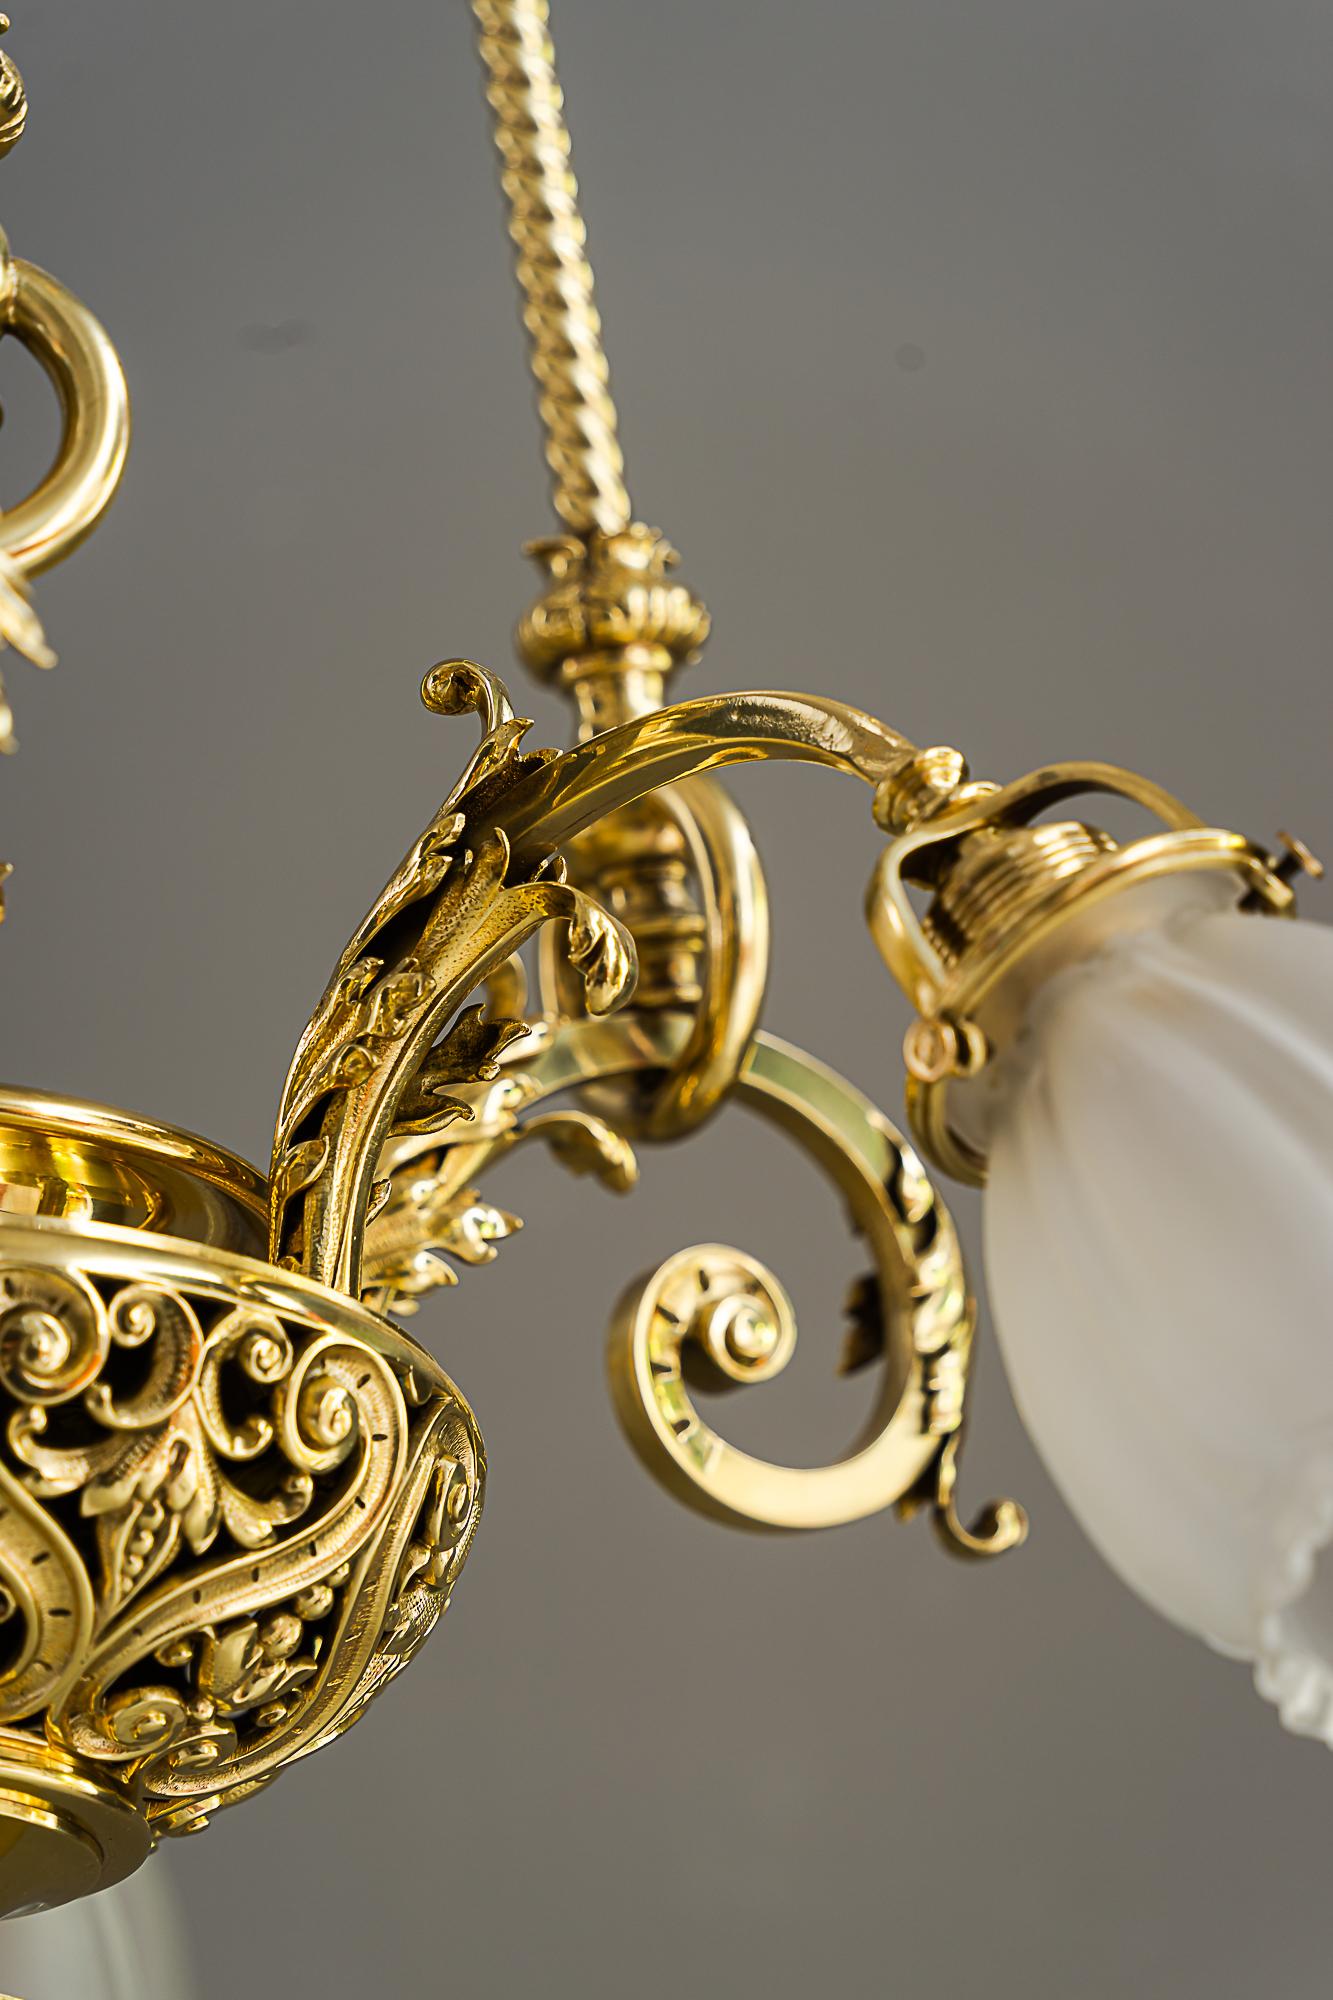 Historic chandelier vienna around 1890s with original antique glass shades For Sale 5